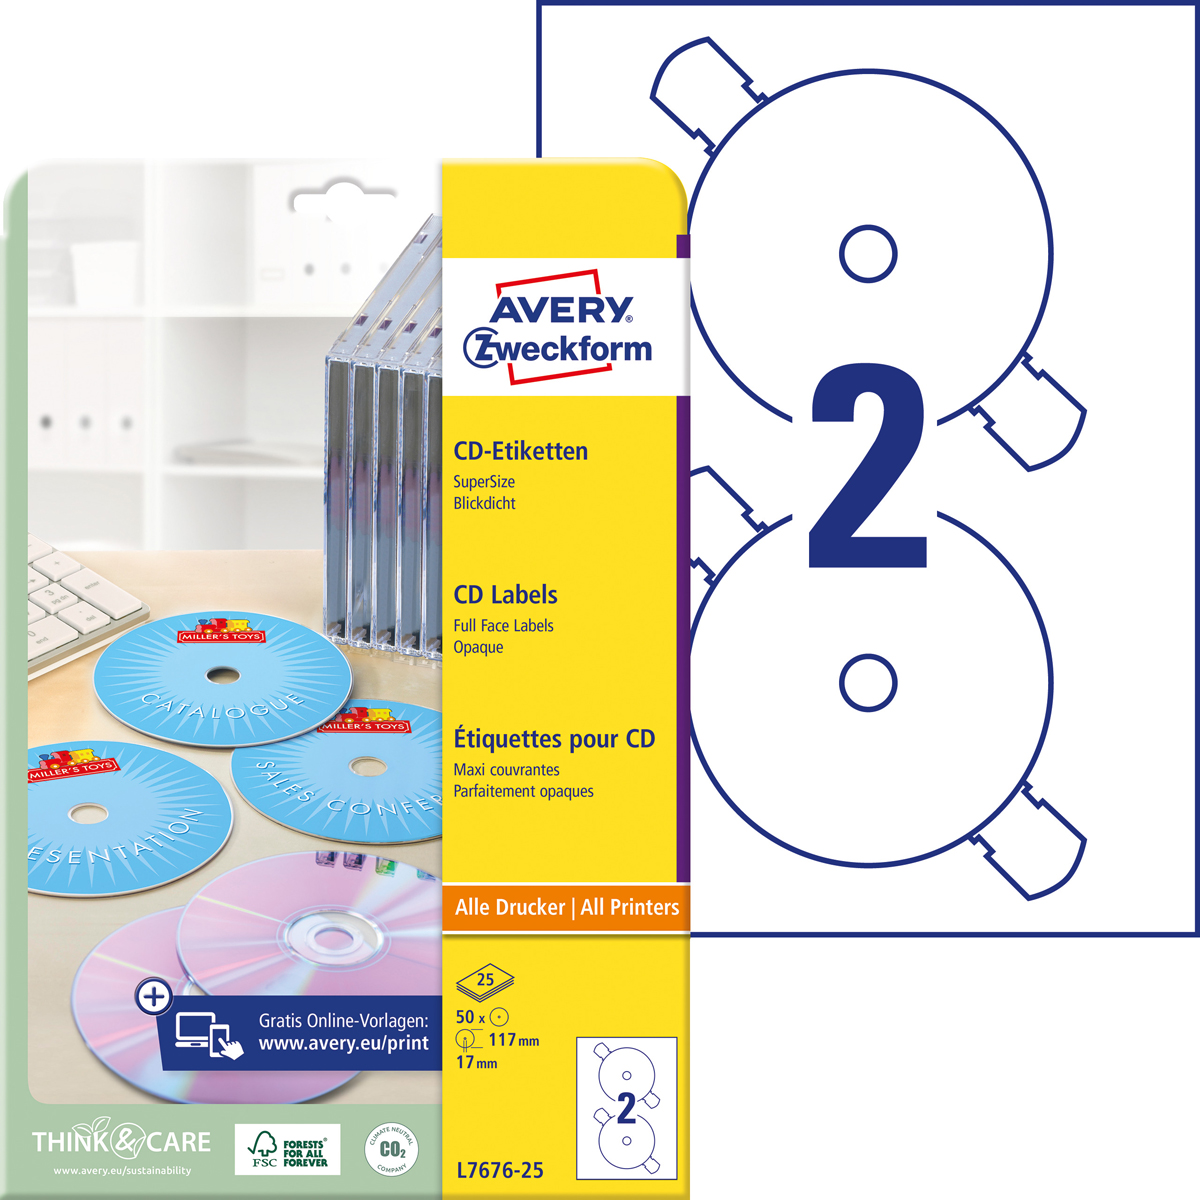 Avery Zweckform L7676-25 CD-Etiketten SuperSize,, Ø 117 mm, CDs, 25 Bogen/50 Etiketten, weiß